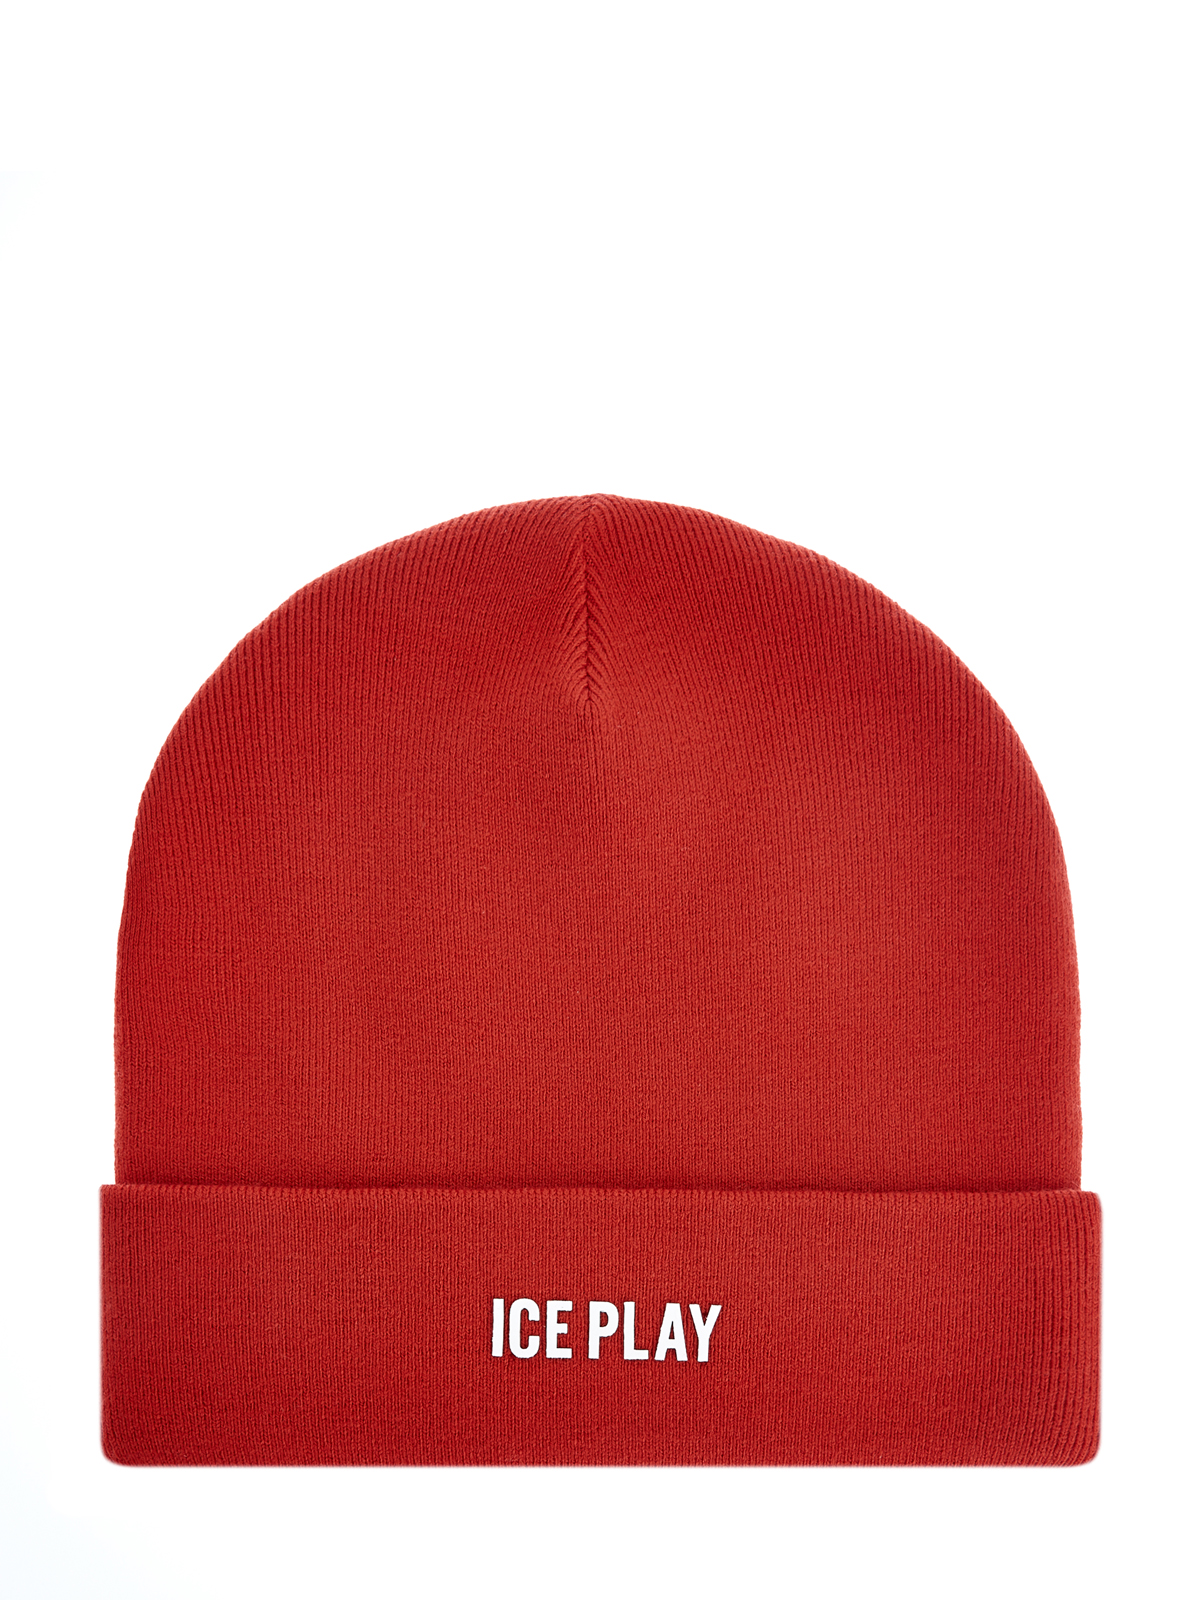 Яркая шапка с отворотом и контрастным логотипом ICE PLAY, цвет красный, размер 48;50;52 - фото 1